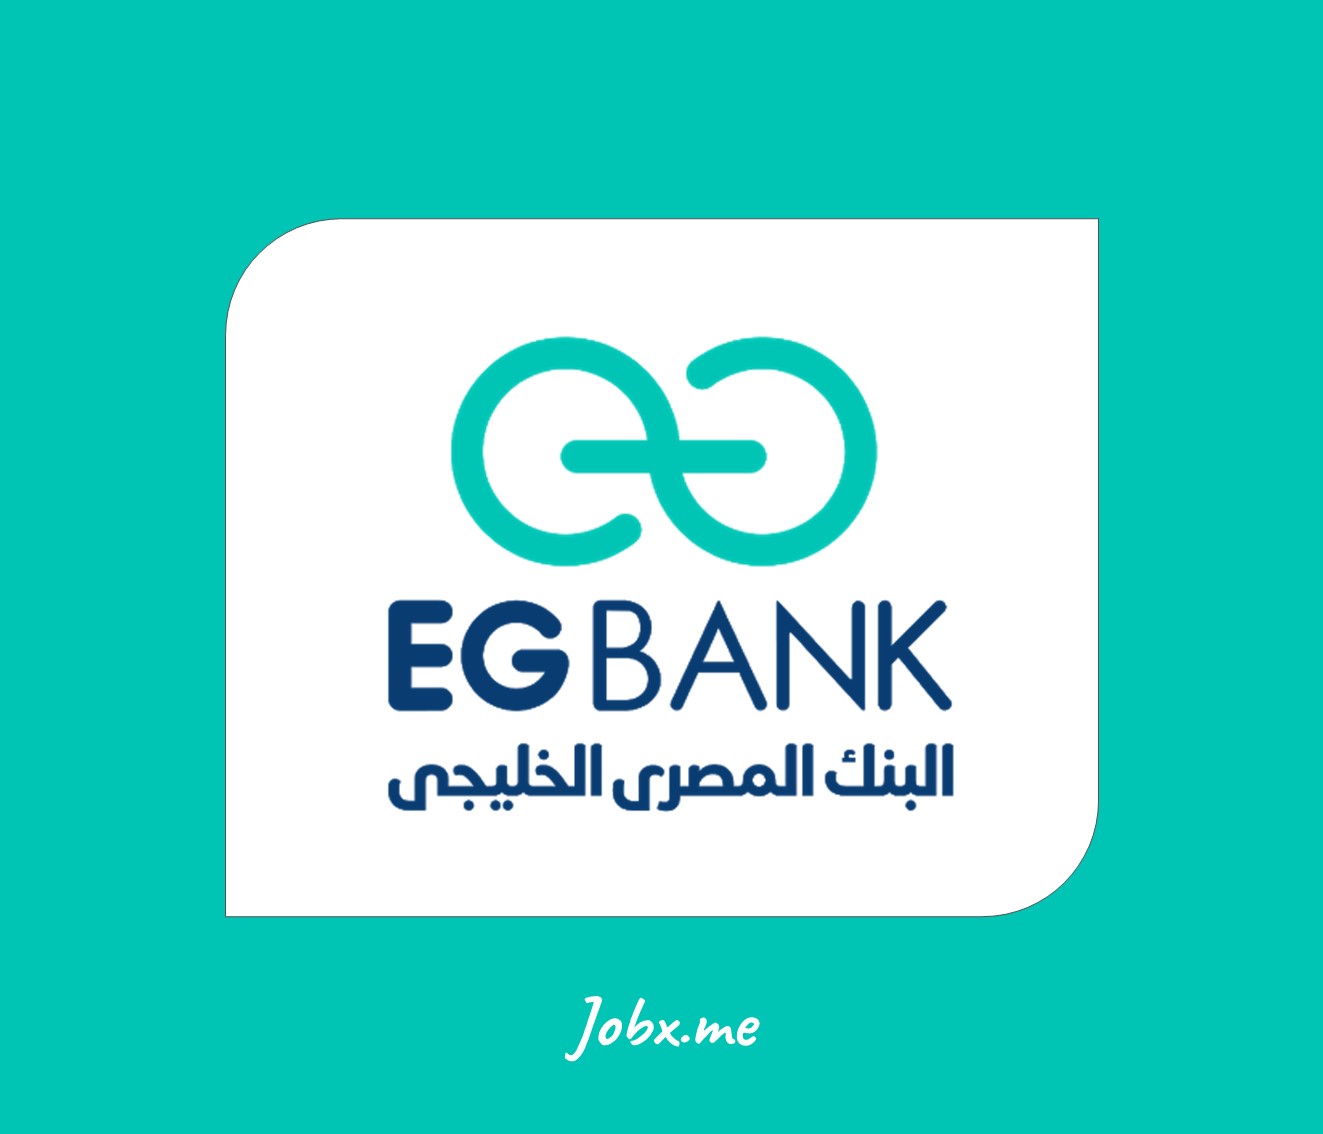 EG bank Jobs